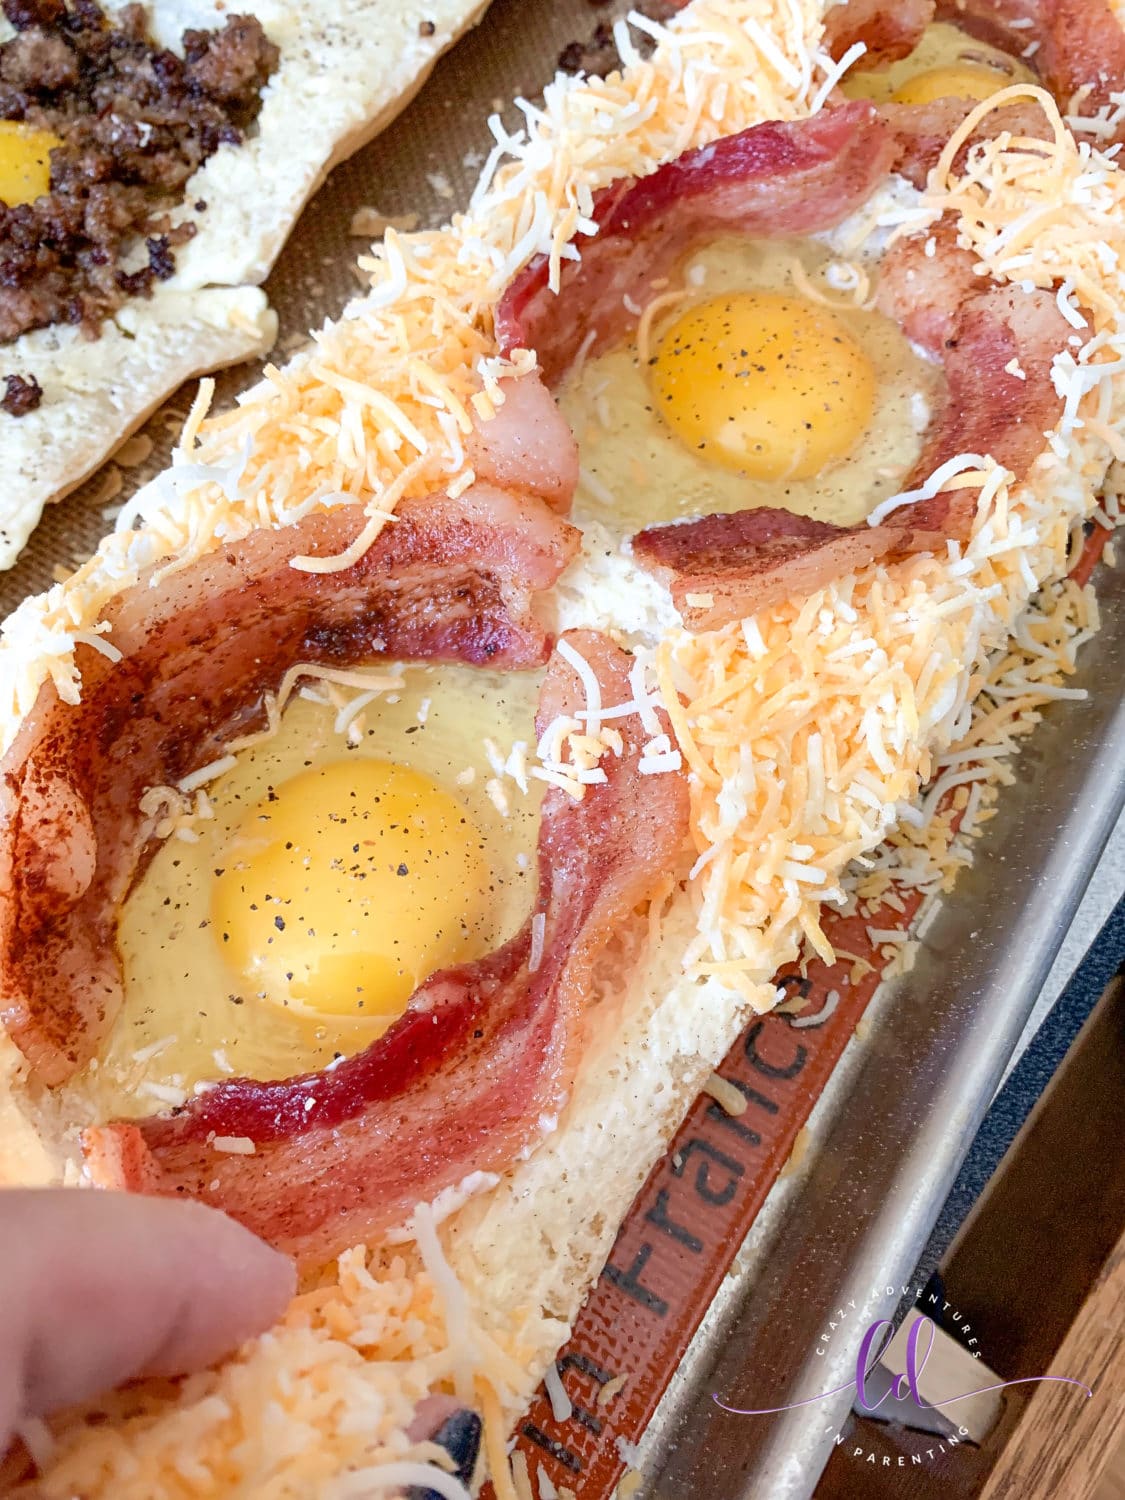 Add cheese to the Bacon Cheesy Baked Egg Italian Toast